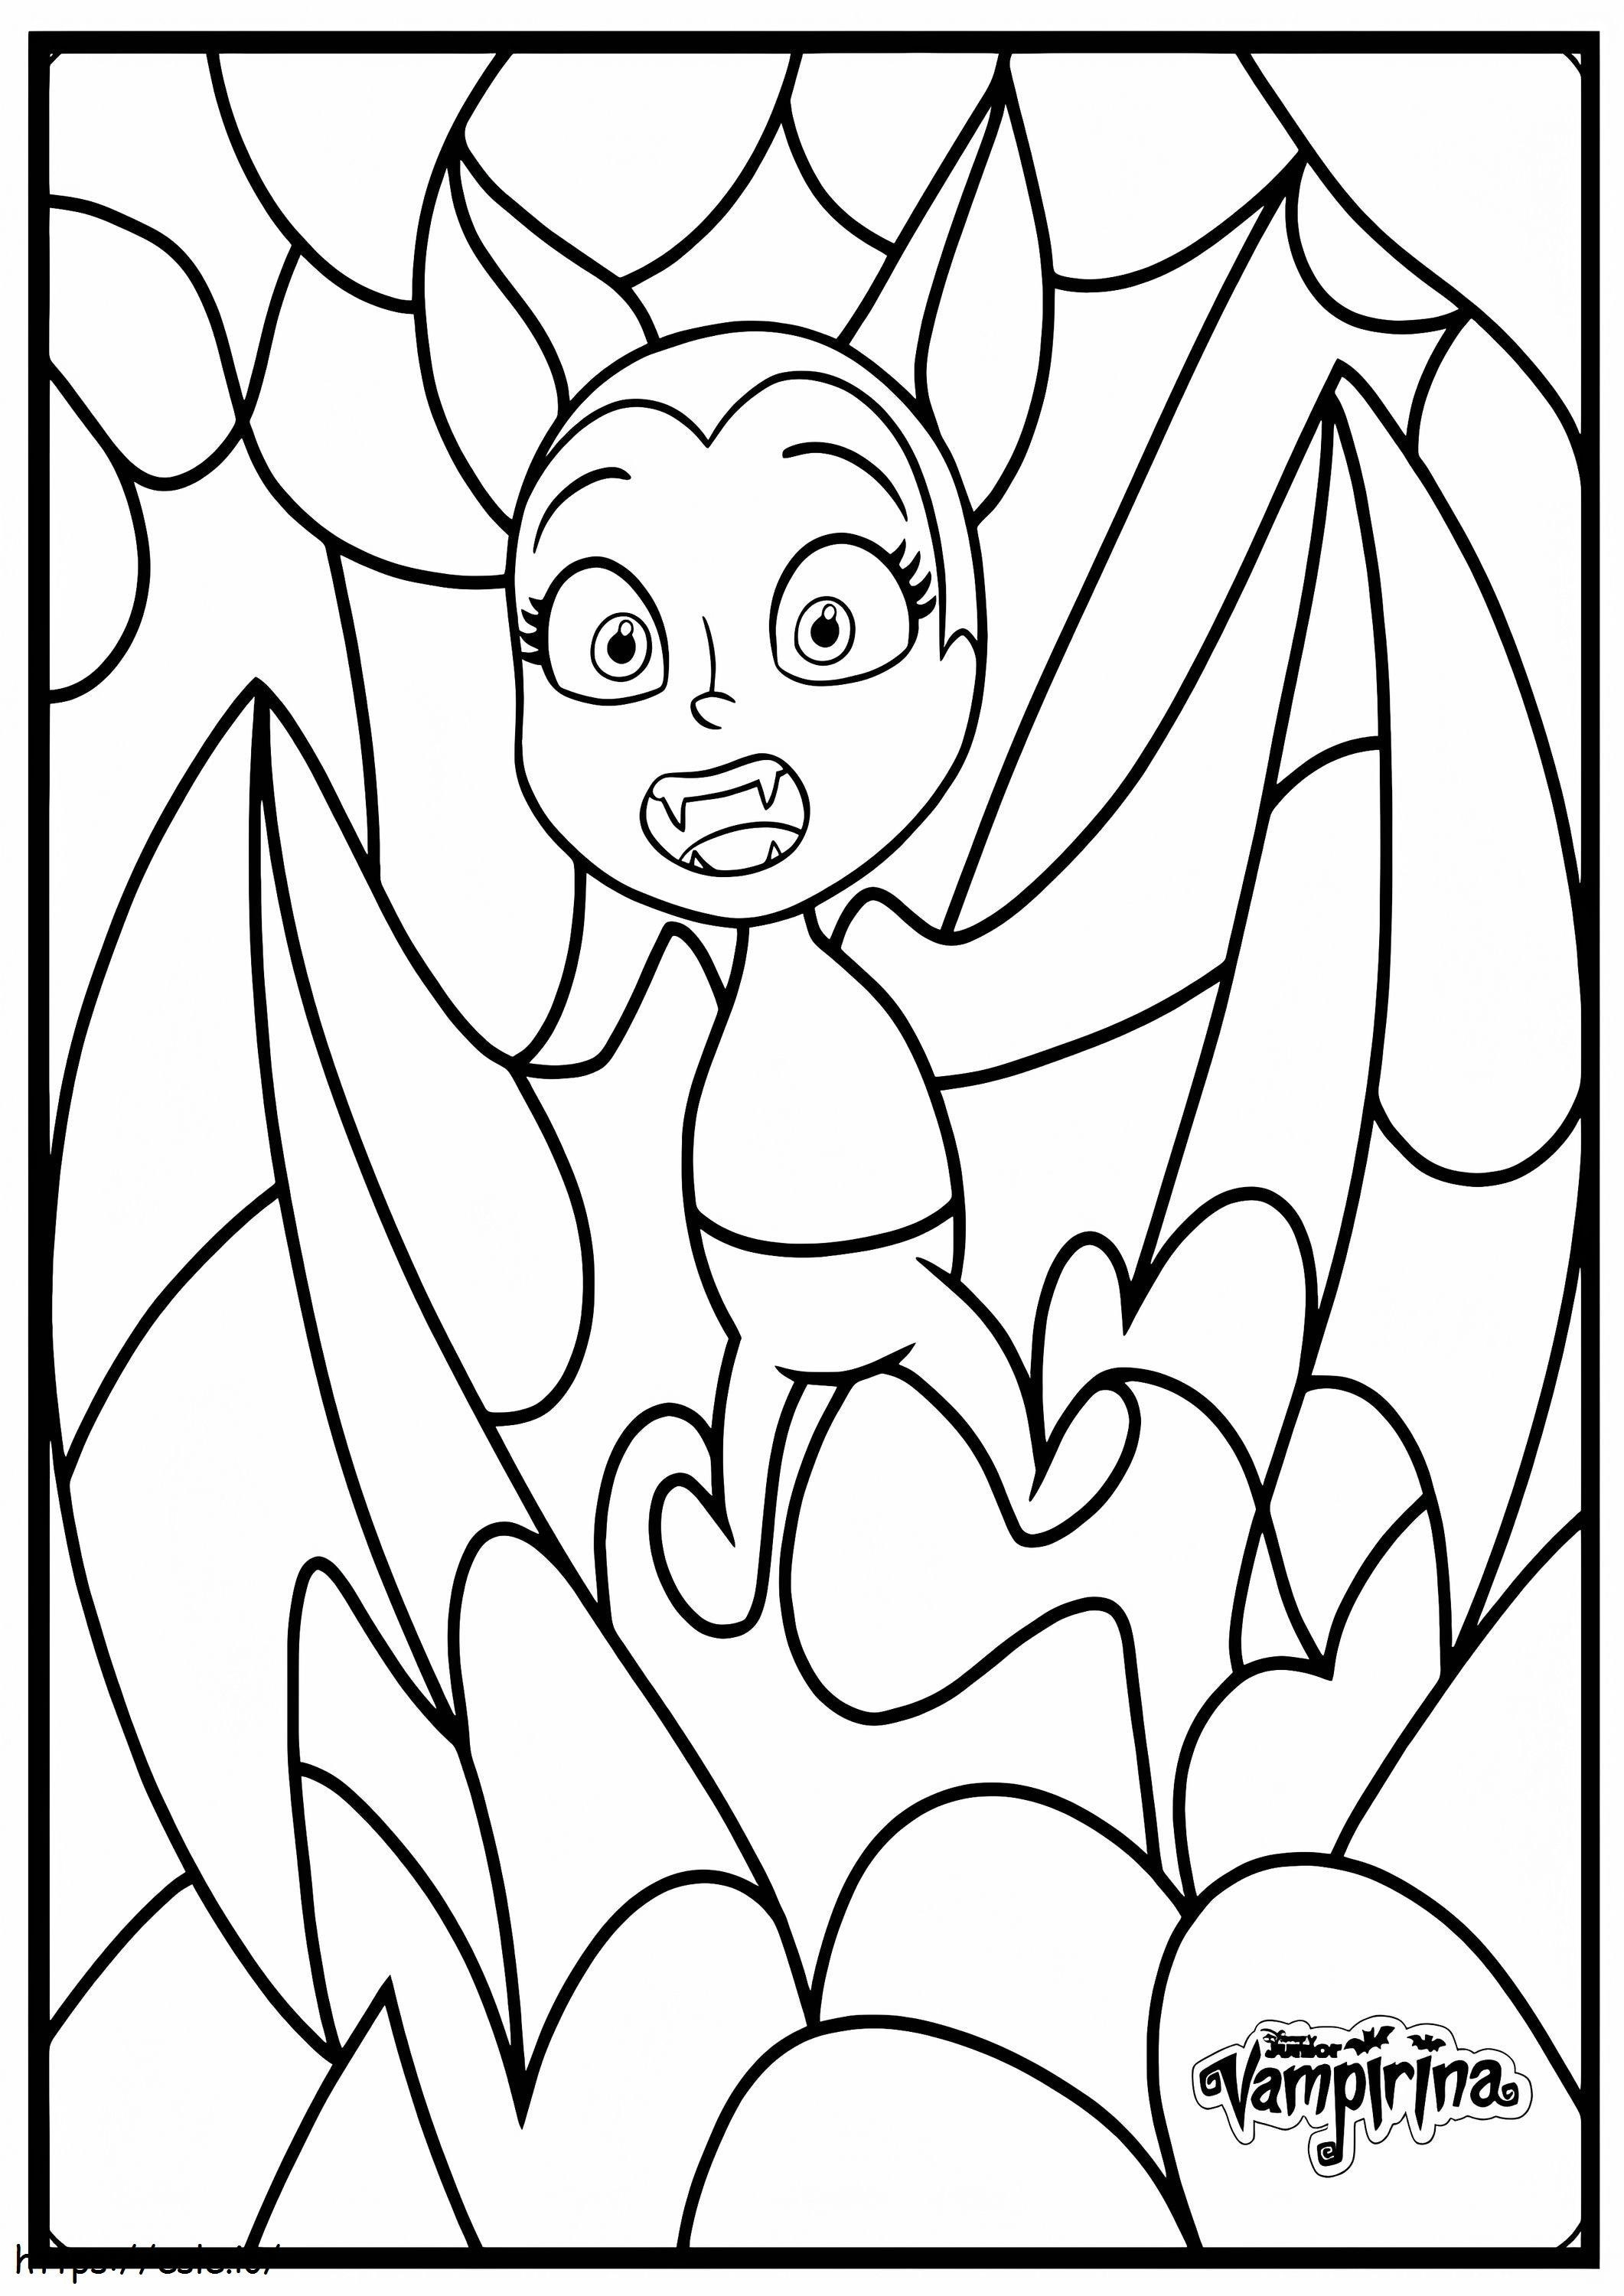 1580372959 Morcego Vampirina da Disney para impressão para colorir